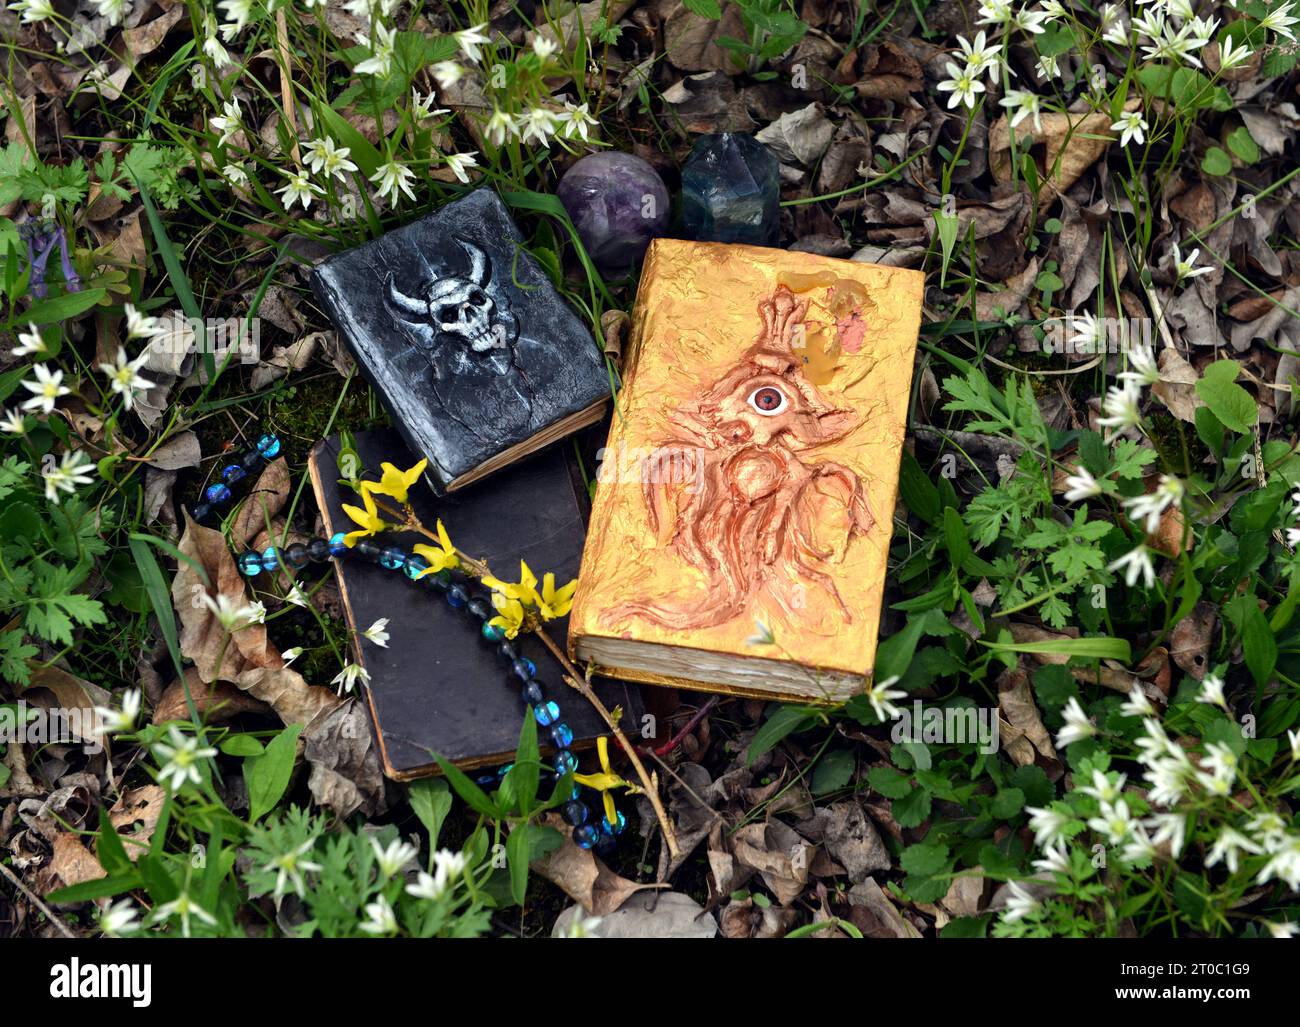 Dekorierte Zauberbücher auf dem Gras im Garten. Okkultes, esoterisches und Wahrsagungsstilleben. Mystischer Hintergrund mit Vintage-Objekten Stockfoto